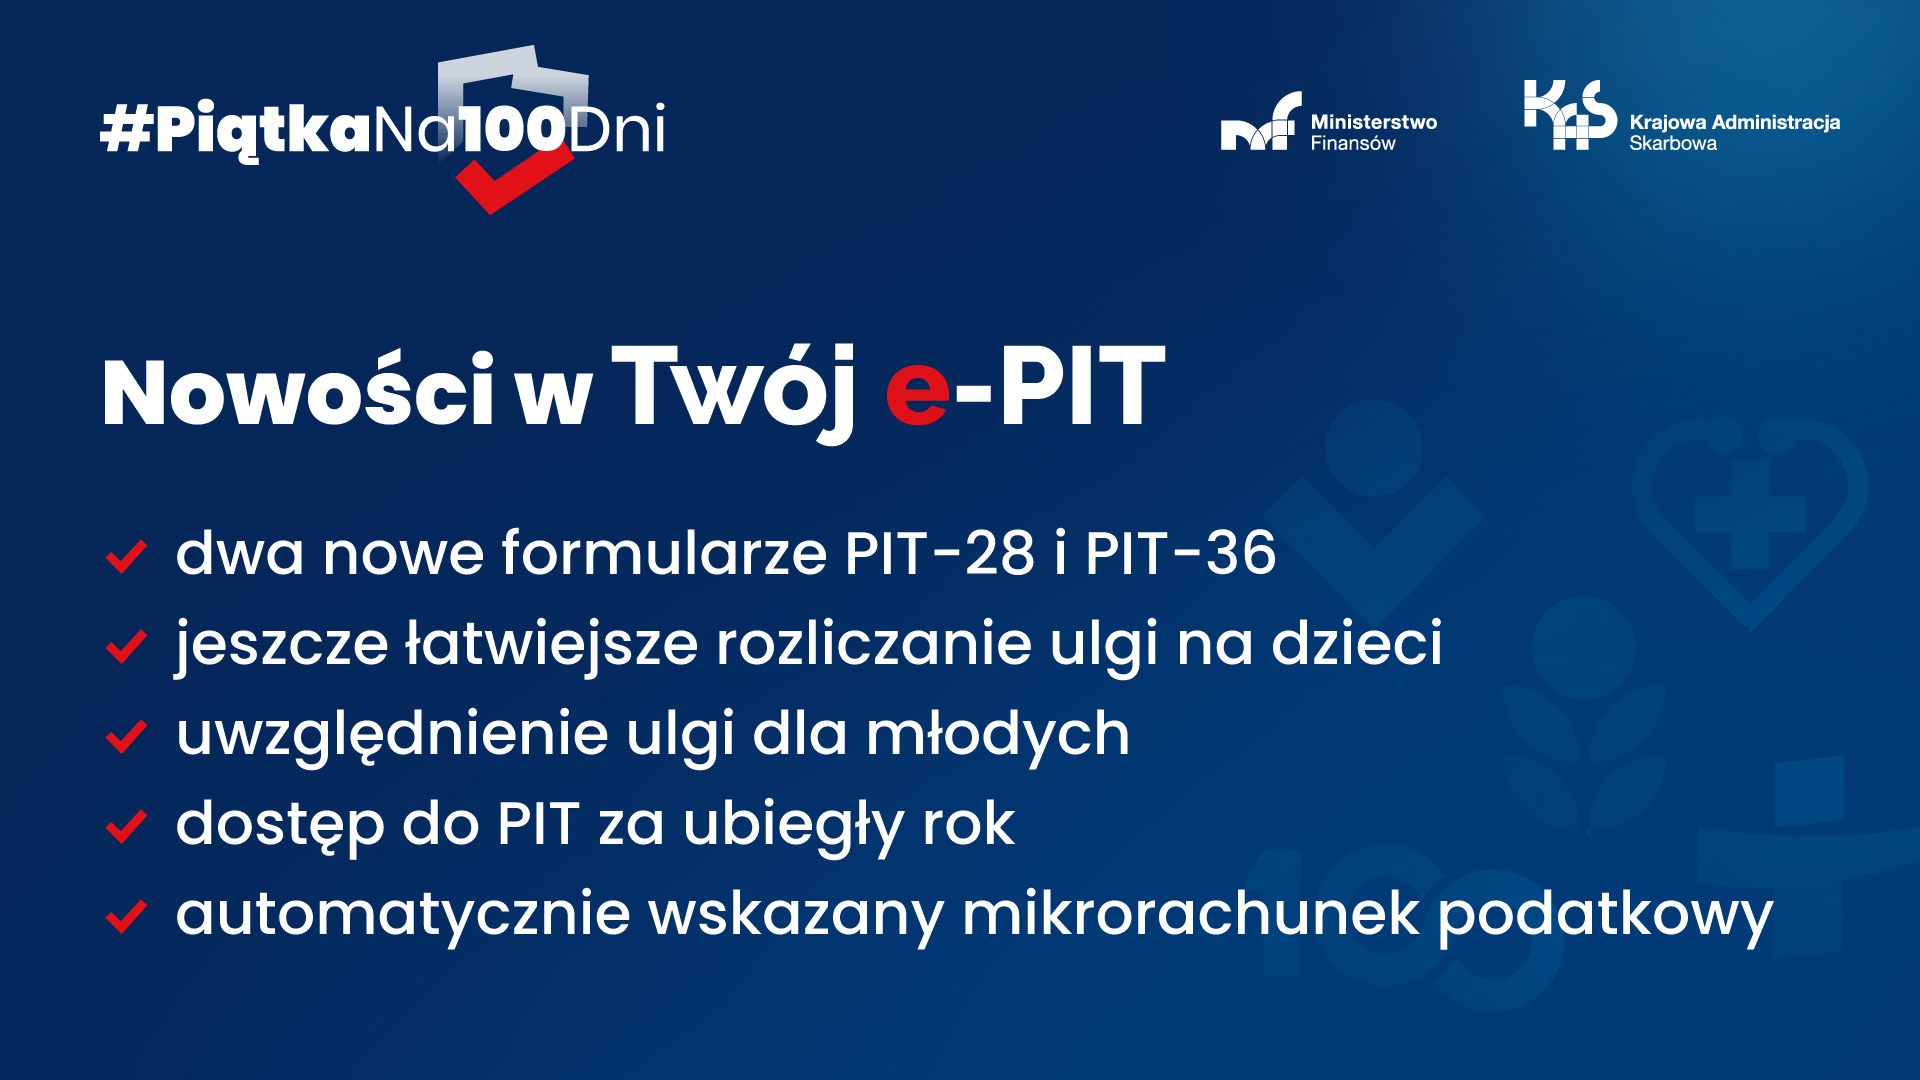 W lewym górnym rogu napis Piątka na 100 dni na tle konturu Polski. W prawym górnym rogu logo Ministerstwa Finansów. Na środku napis Nowości w Twój ePIT. Poniżej nienumerowana lista z następującymi informacjami Dwa nowe formularze PIT28 i PIT36, jeszcze łatwiejsze rozliczenie ulgi na dzieci, uwzględnienie ulgi dla młodych, dostęp do PIT za ubiegły rok i automatycznie wskazany mikrorachunek podatkowy.